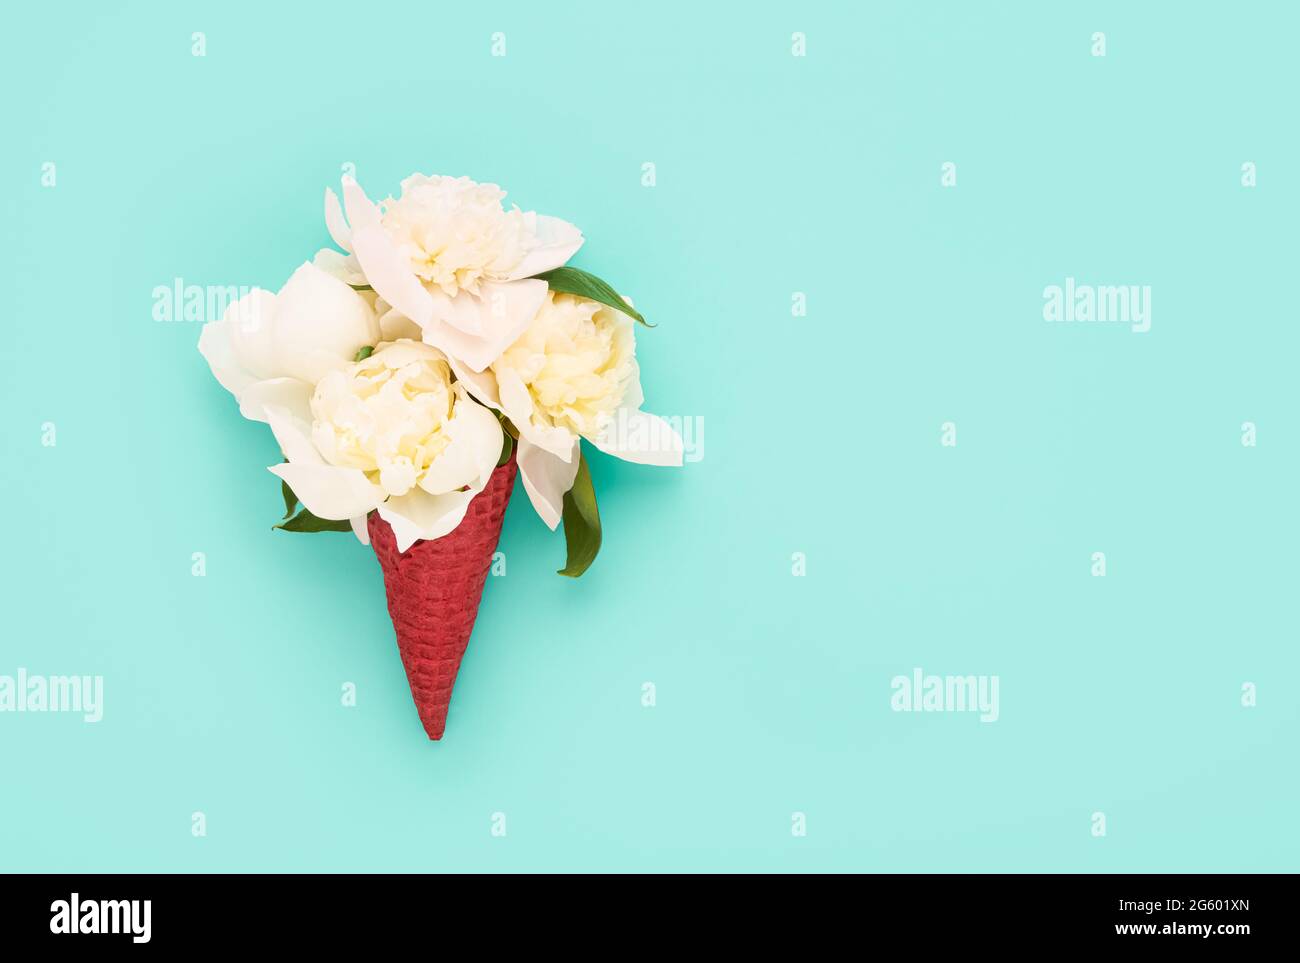 Weiße Pfingstrosen-Blüten in einem roten Waffel-Eiscreme-Kegel auf einem sonnengebackenen Minze-Hintergrund. Muttertag, Valentinstag, Bachelorette, Sommerkonzept. Stockfoto